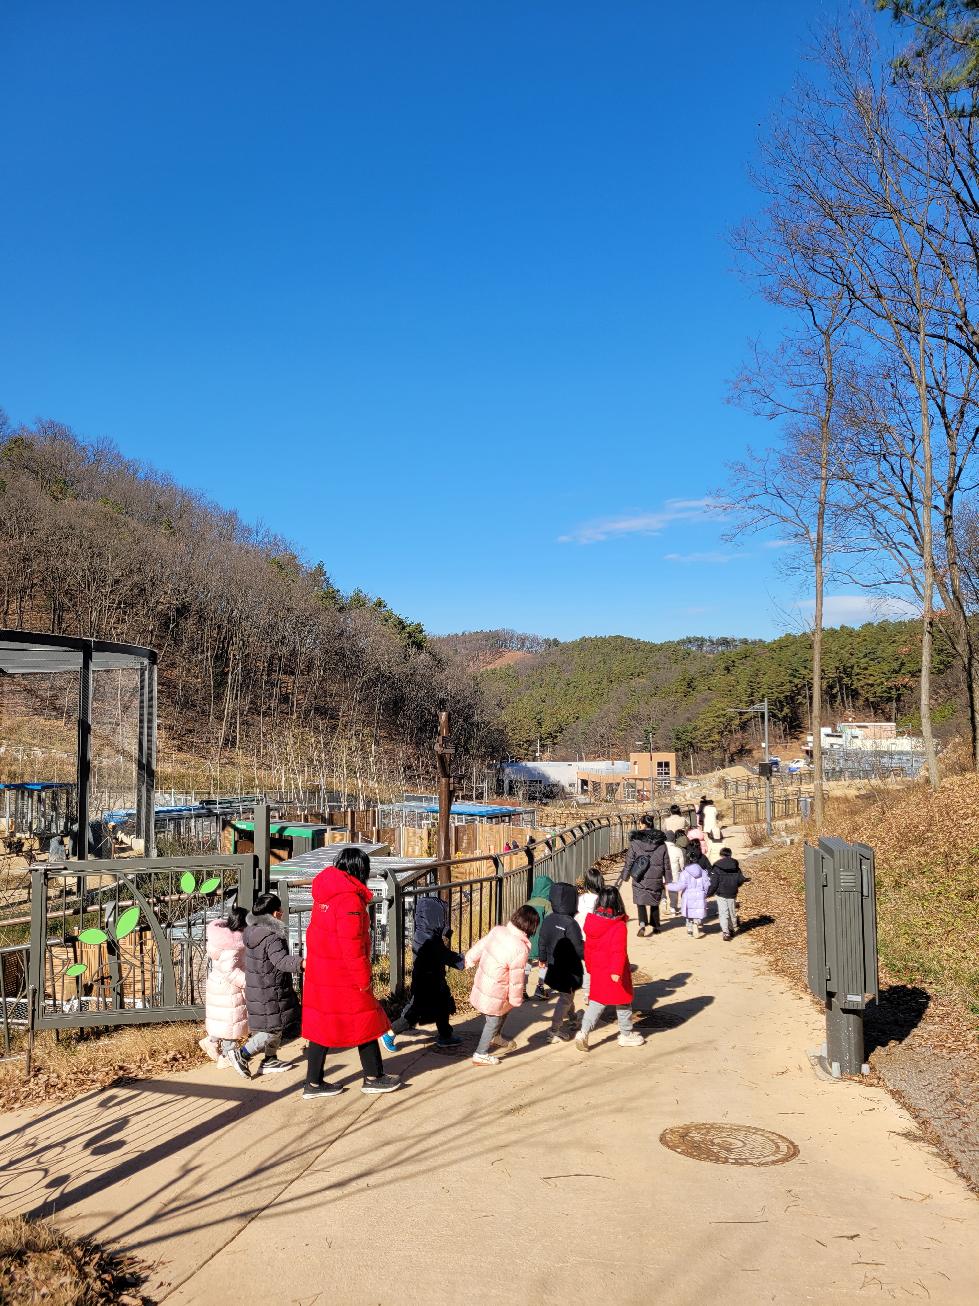 경기도, 야생동물 생태보전교육에 올해 3,545명 참가. 생명존중의식 강화